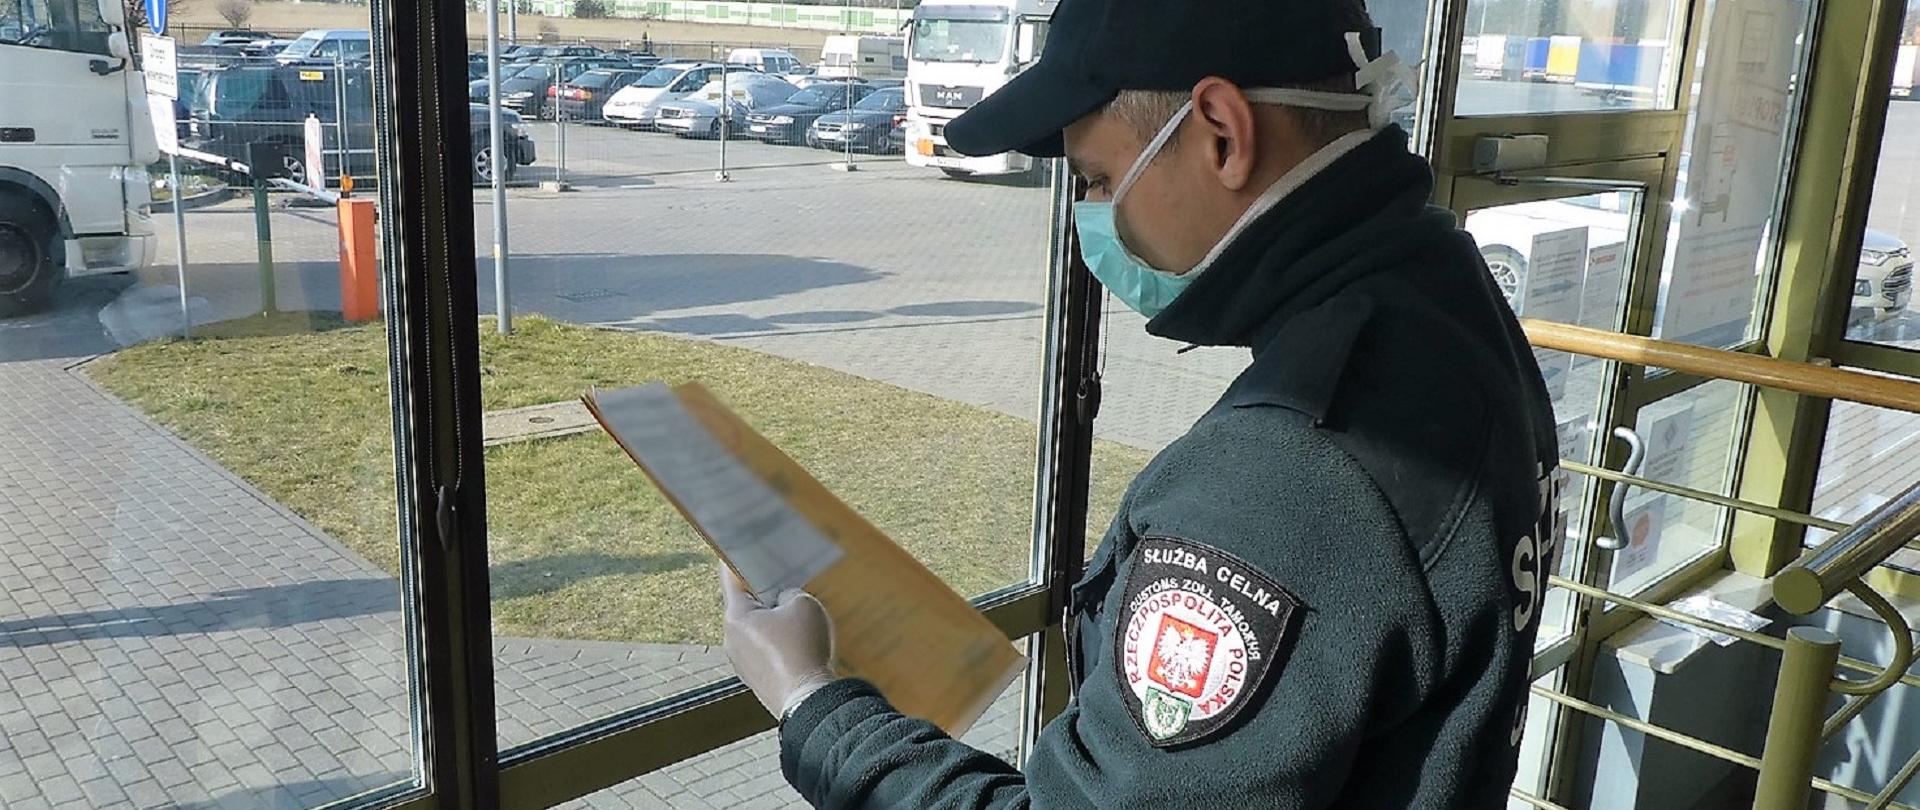 Funkcjonariusz KAS w masce antybakteryjnej i rękawiczkach przegląda dokumenty.